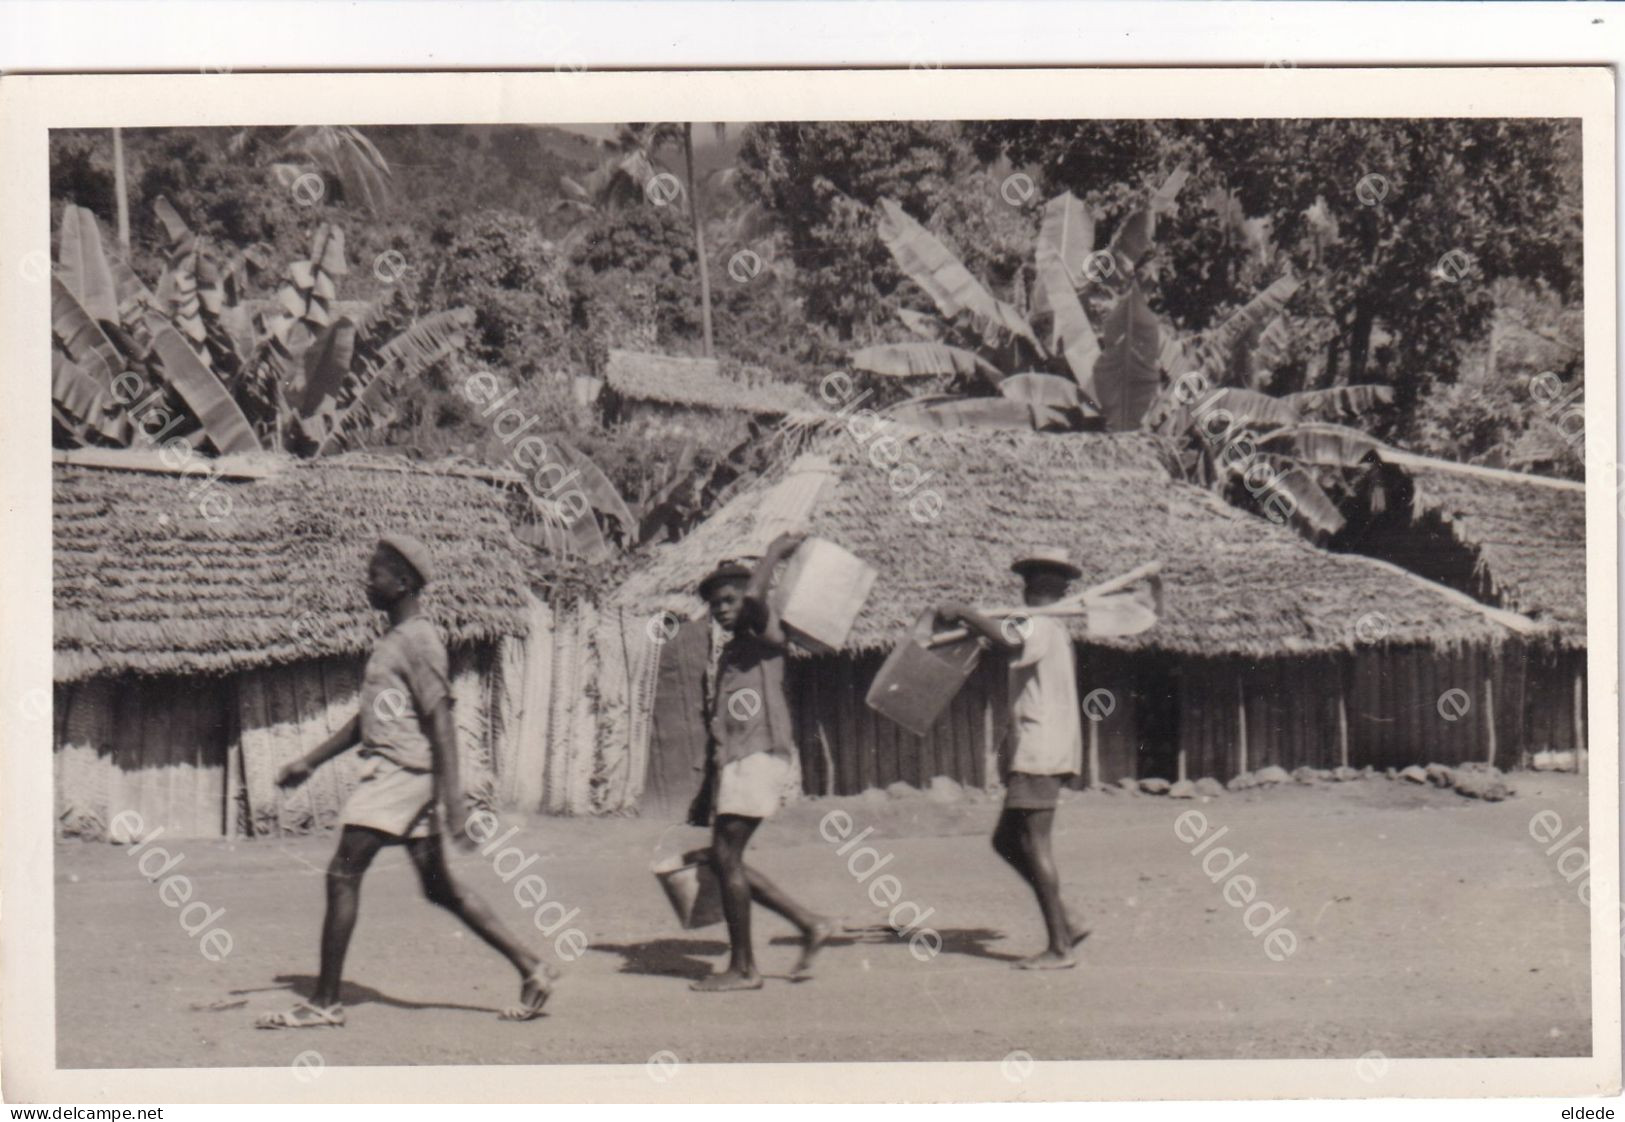 Comores Comoros Real Photo  Grande Comore Natives Near Huts  Ecrite Mutsamudou 1961 Non Timbrée - Comoros